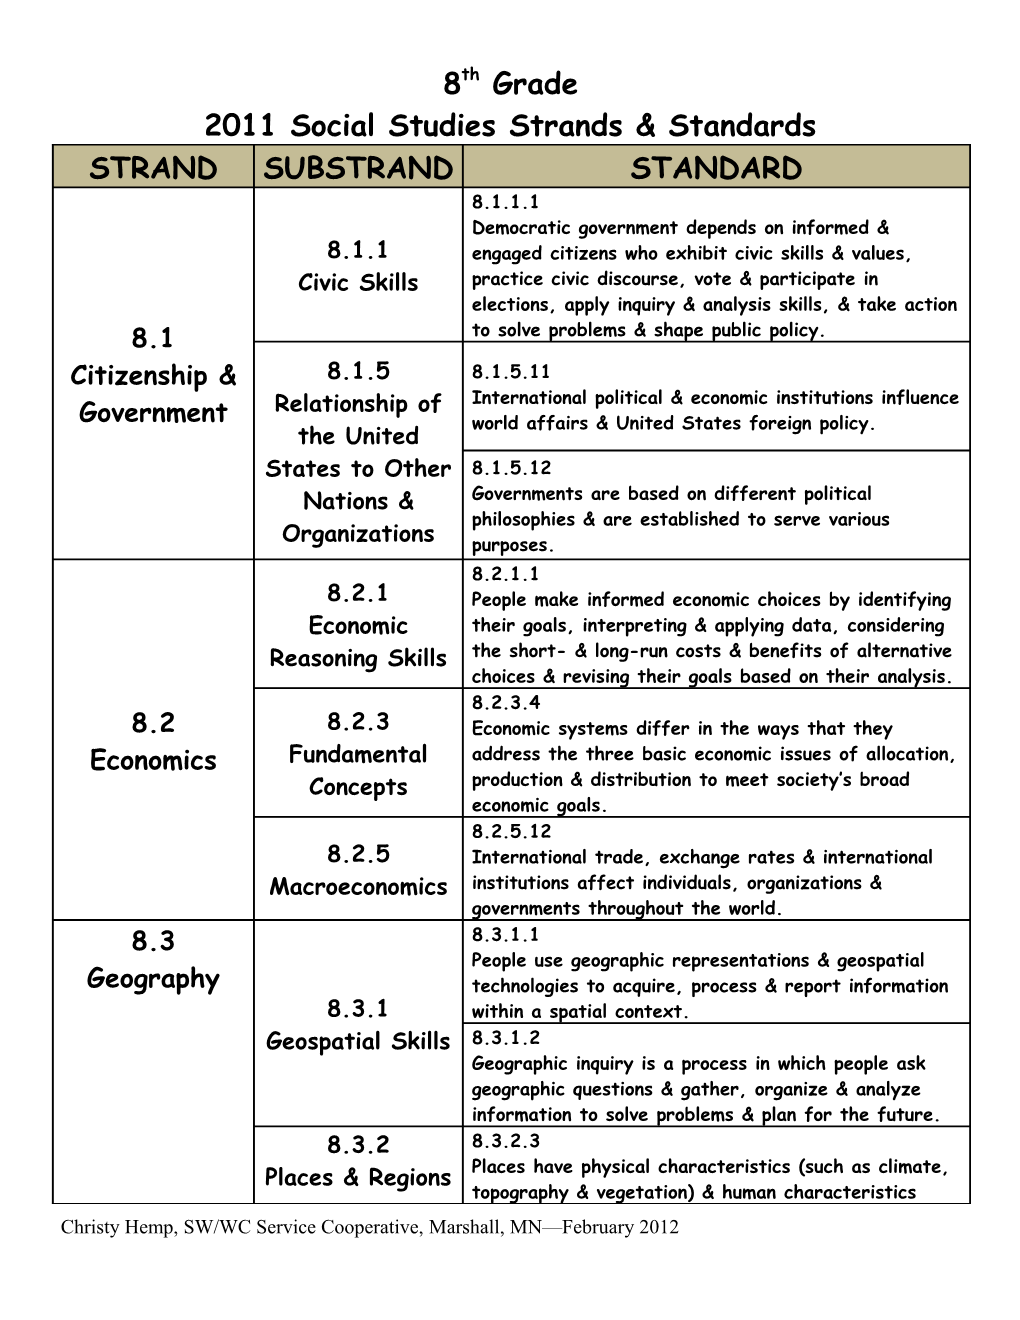 2011 Social Studies Strands & Standards